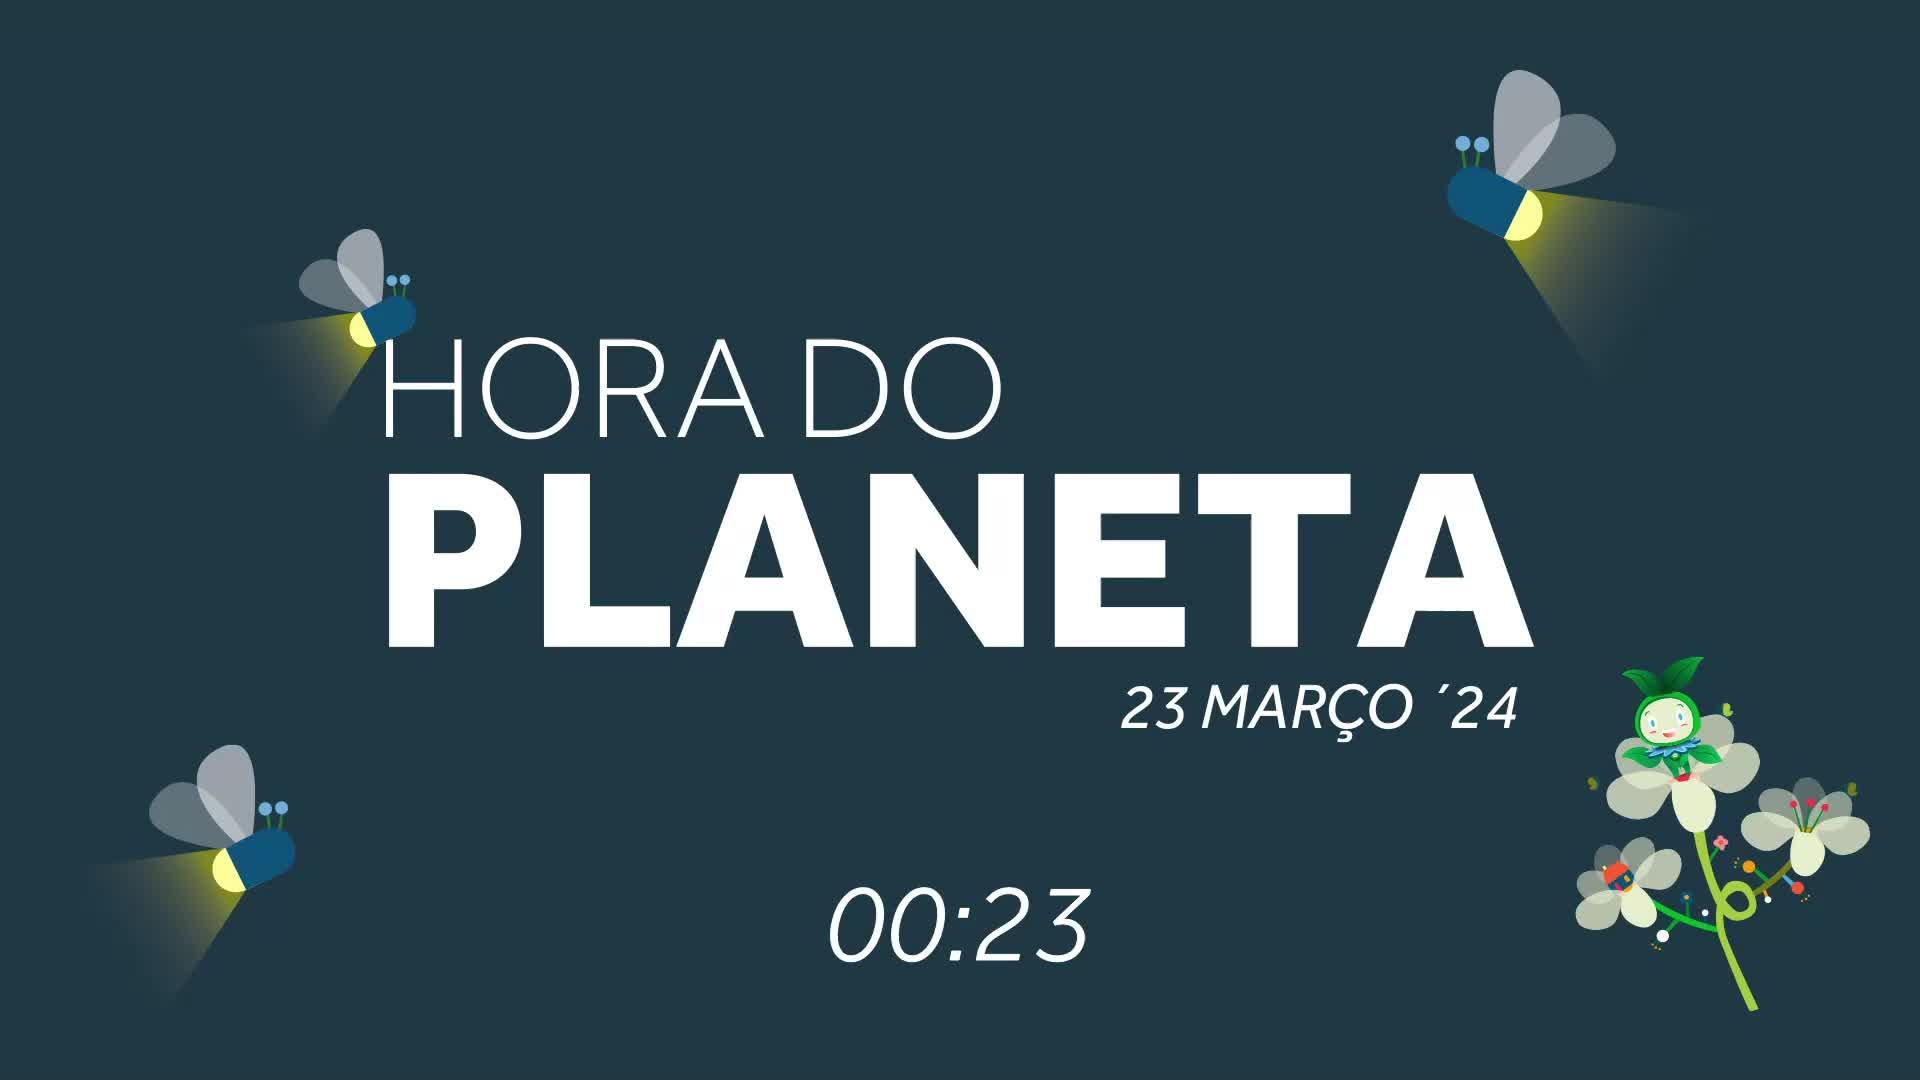 Hora do Planeta em Santa Cruz - 23 Março 2024